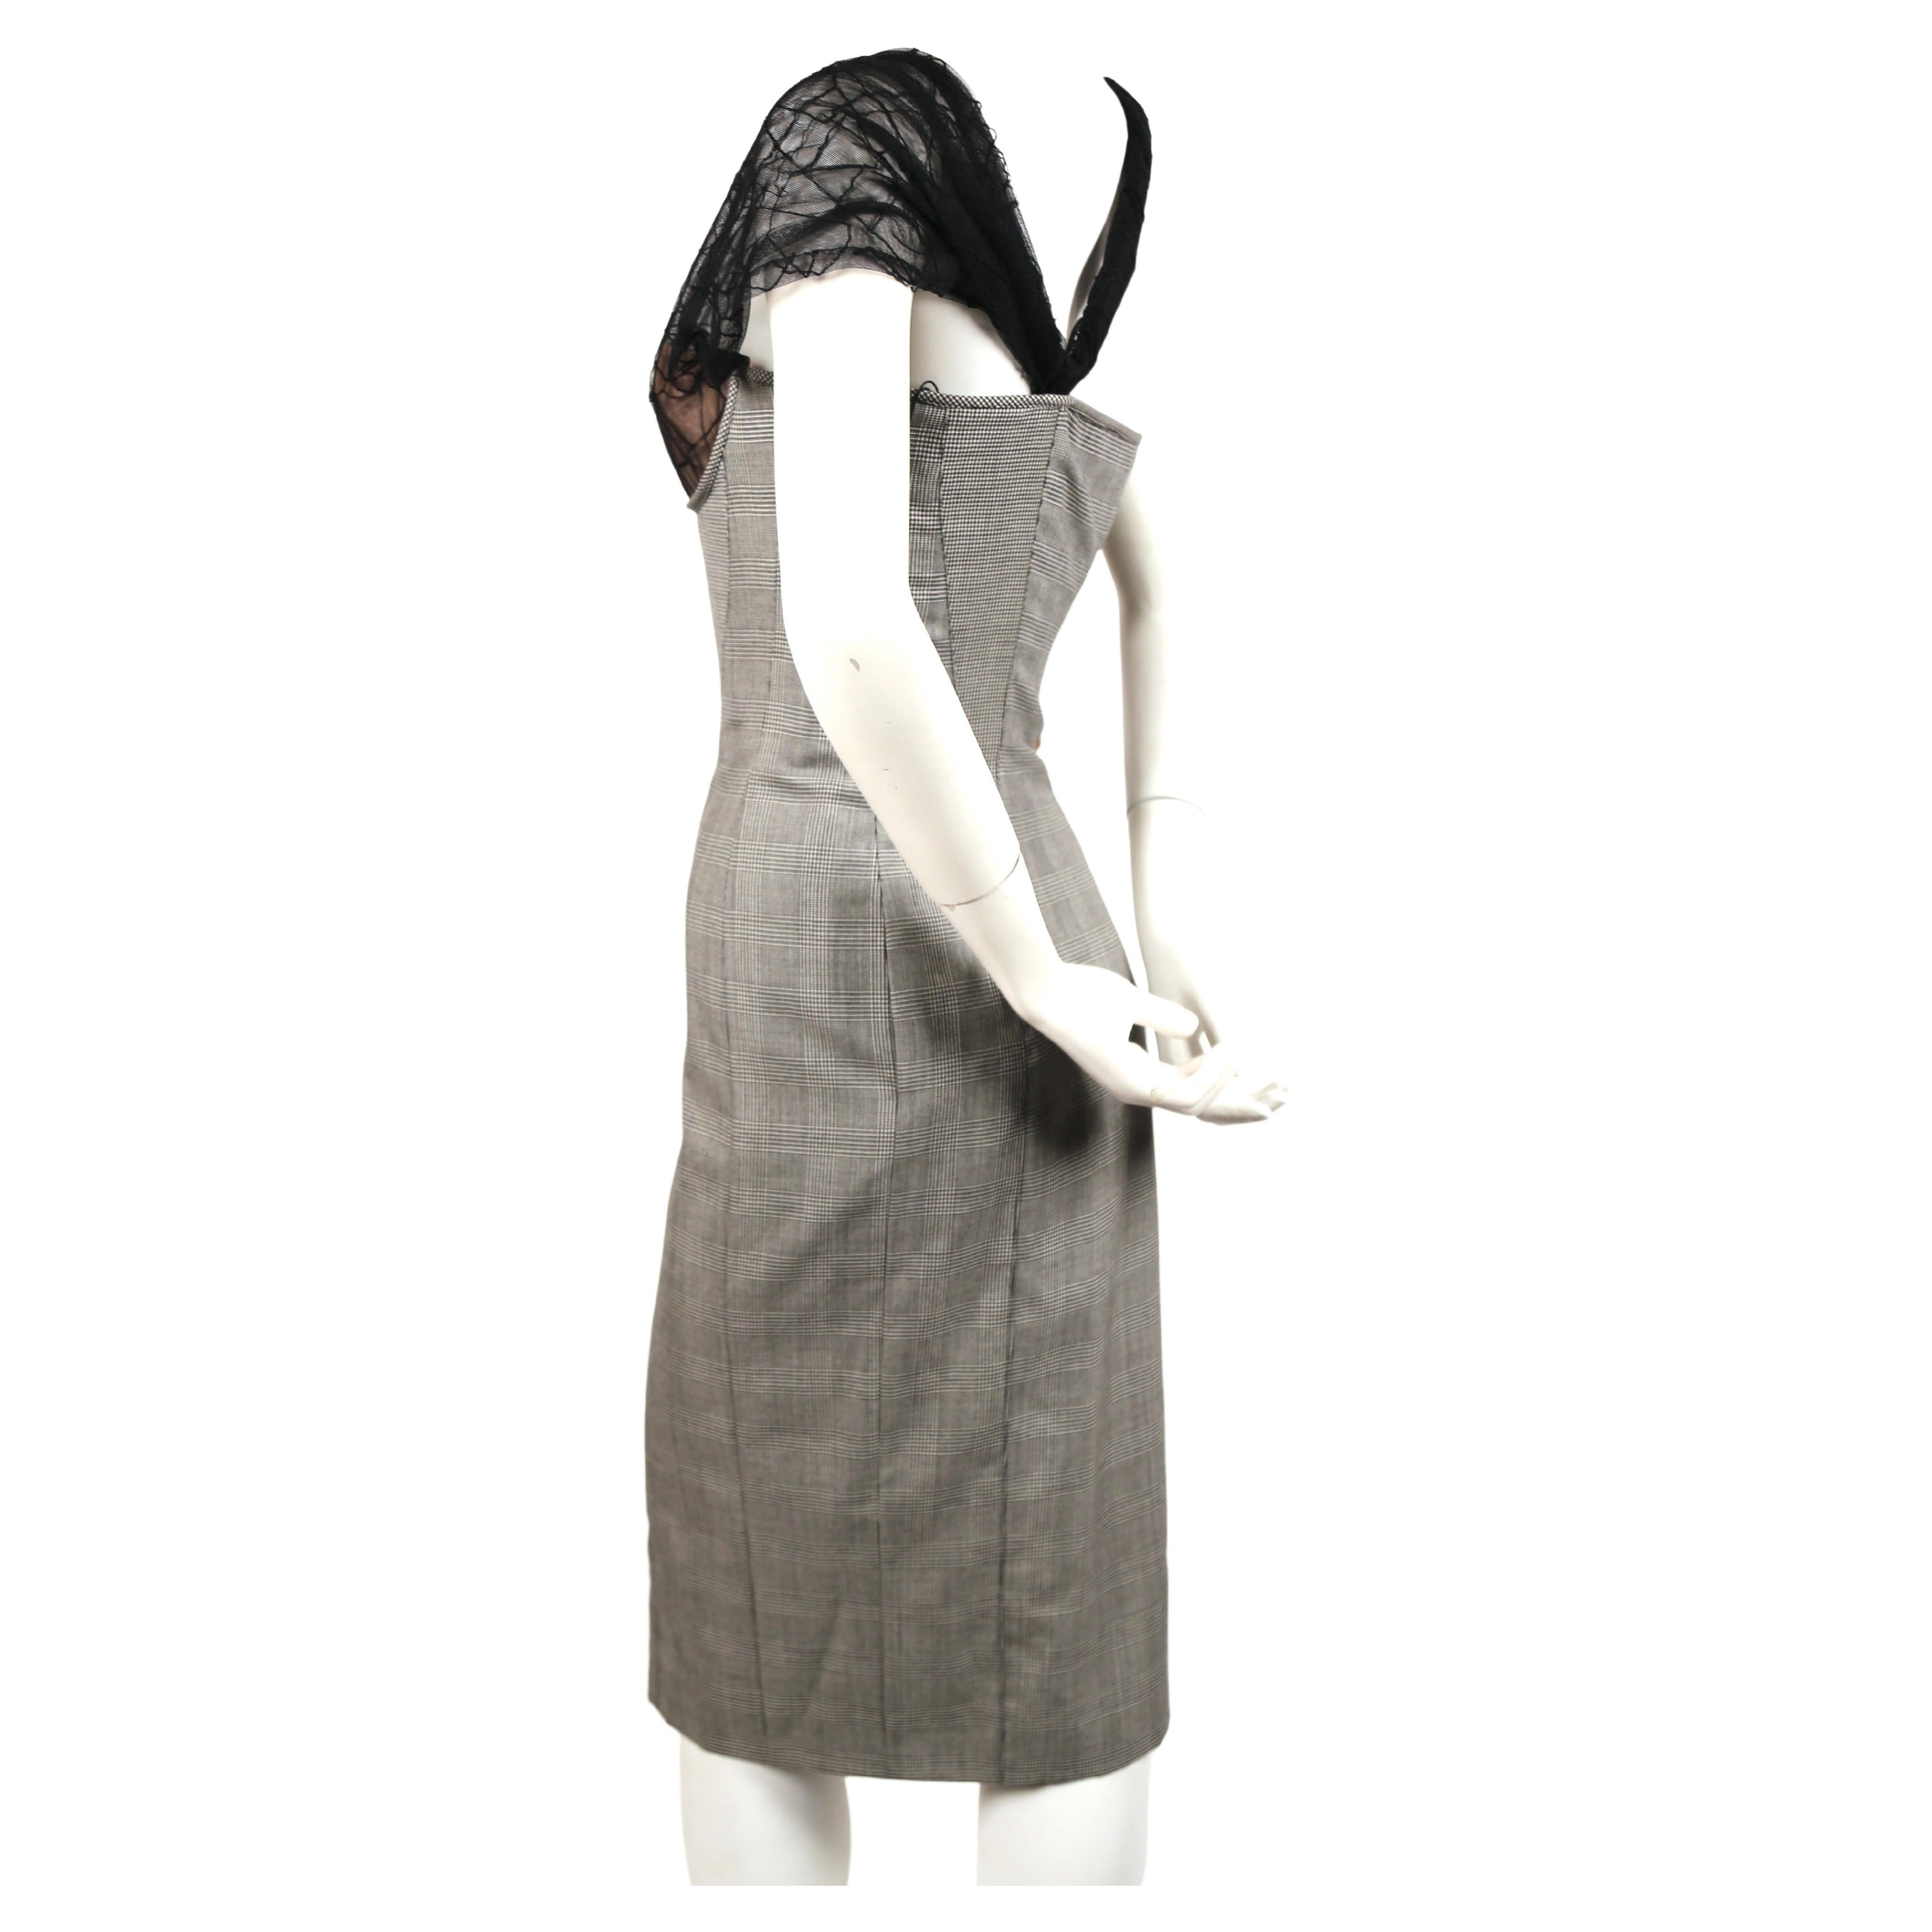 Schwarz-weißes Kleid mit Hahnentrittmuster und asymmetrischem Mesh-Bustier, entworfen von Gianni Versace aus dem Jahr 1998. Eine ähnliche Version sah man an Naomi Campbell auf dem Laufsteg. Italienische Größe 42. Ungefähre Maße: Oberweite 33